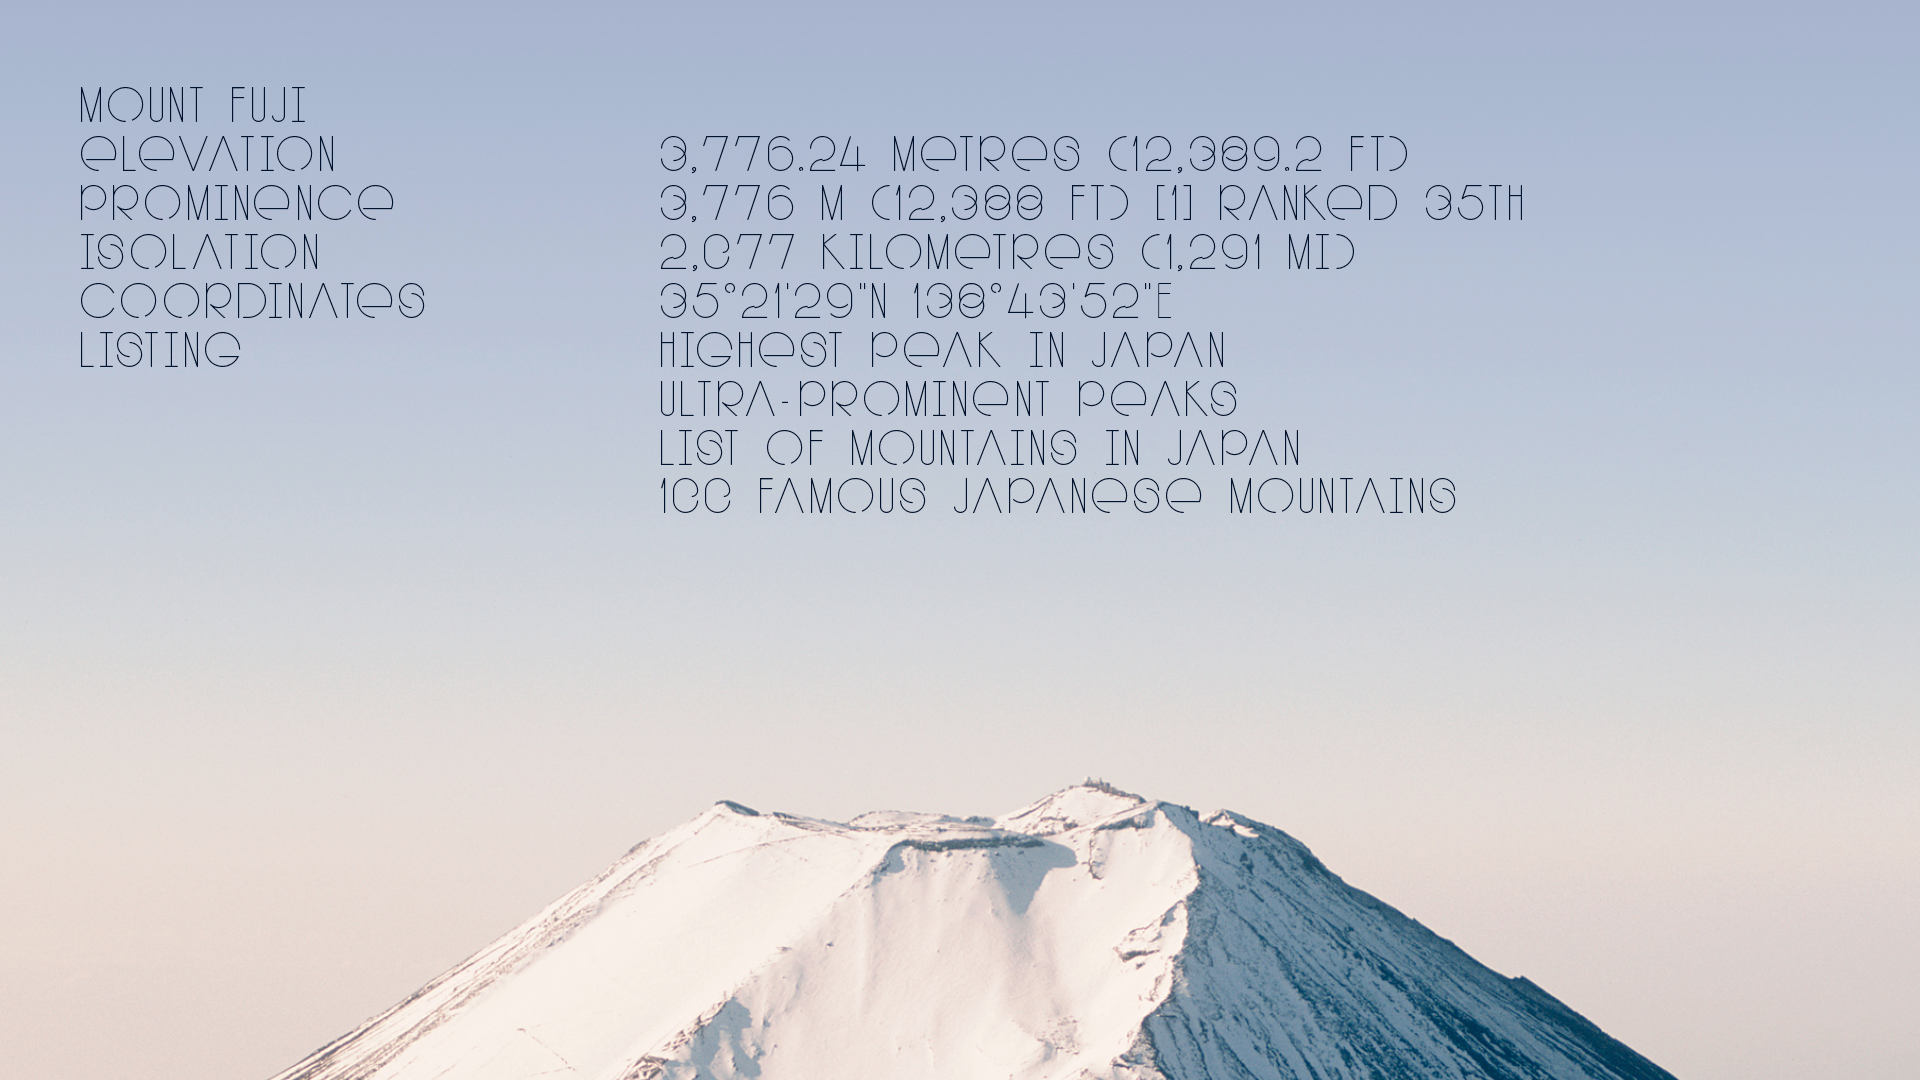 Mount Fuji Image Using PUJI/PUJI Narrow Typeface